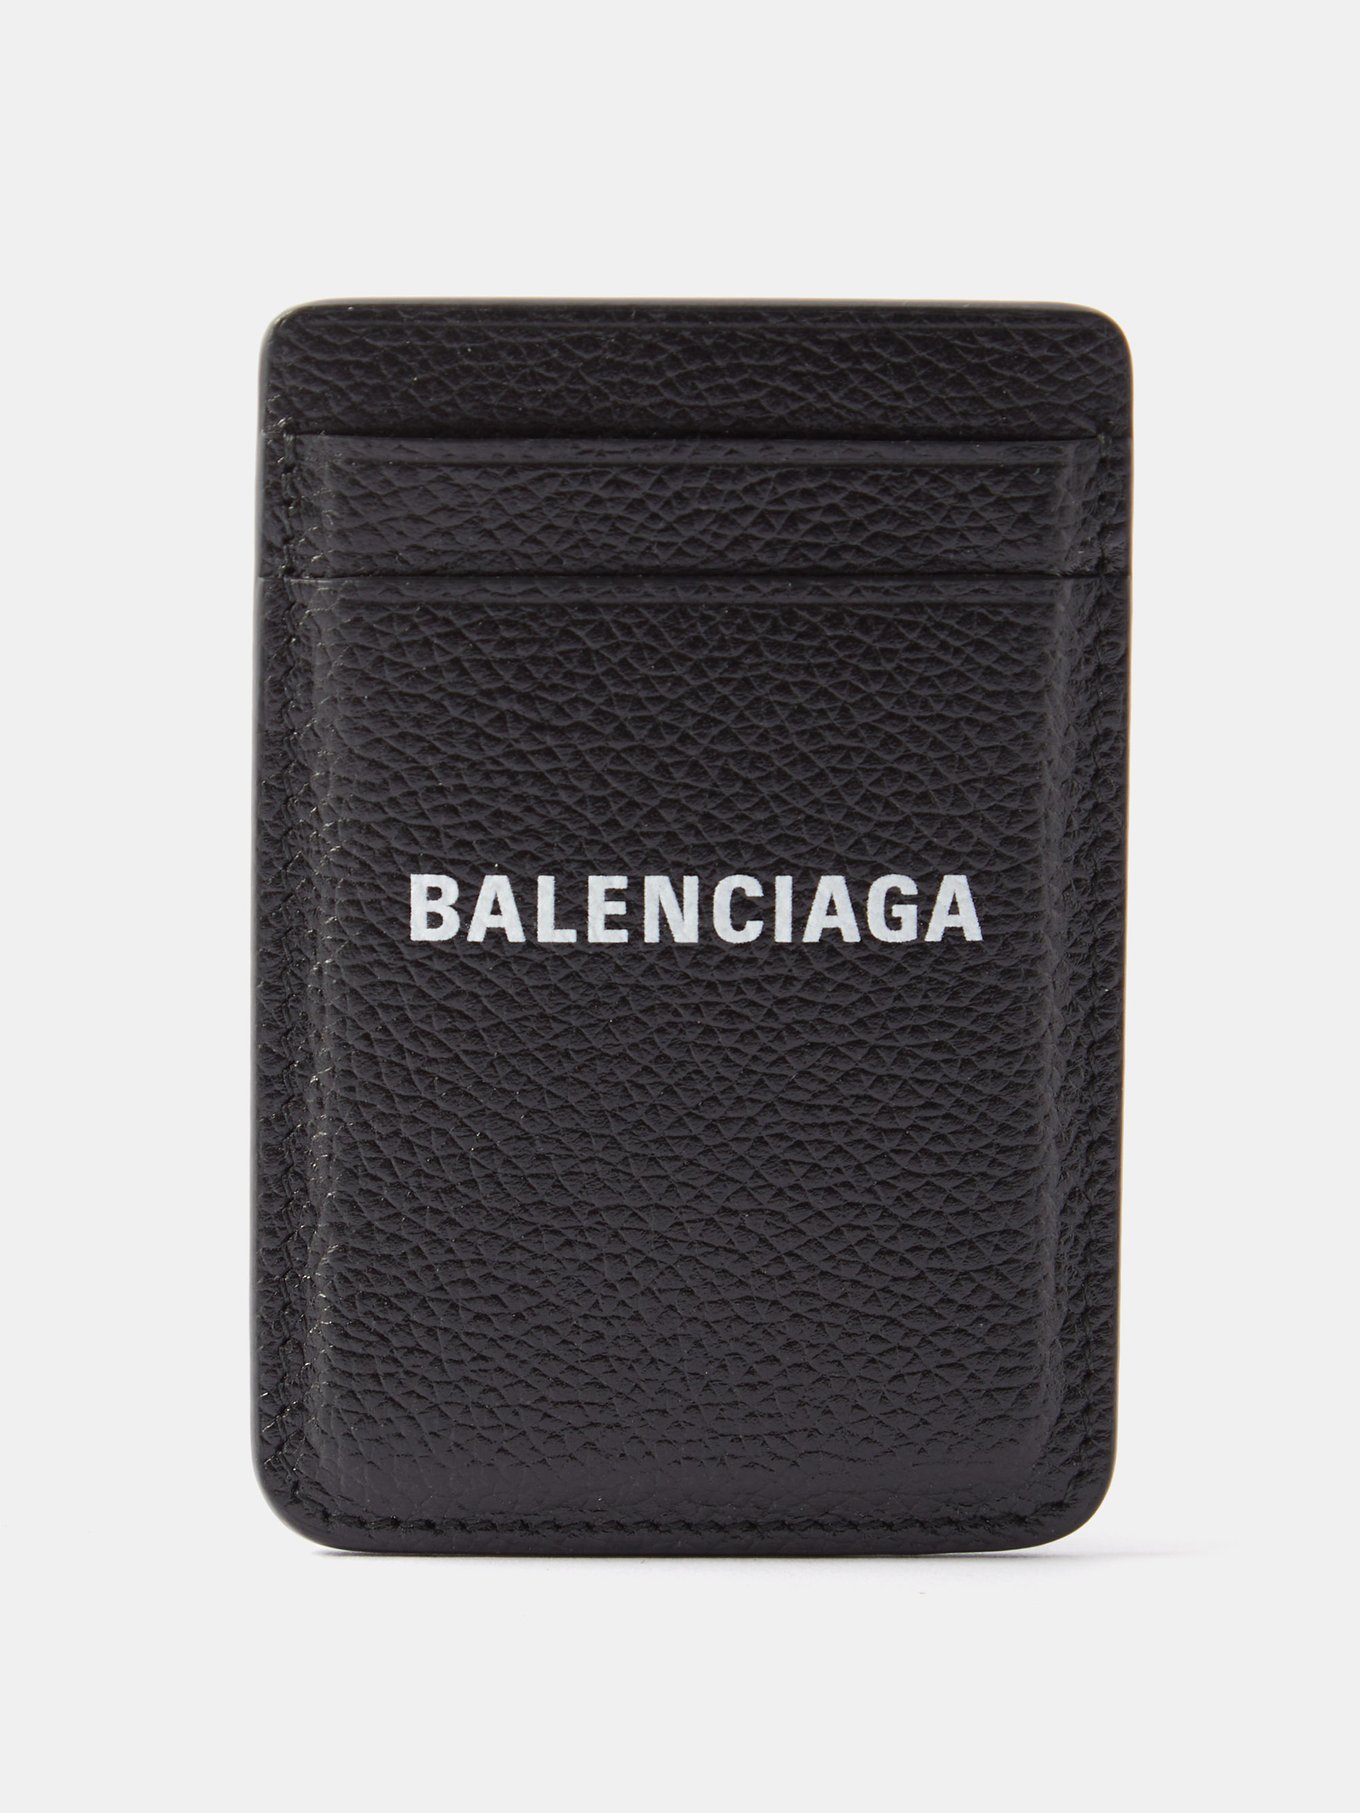 Balenciaga card holder